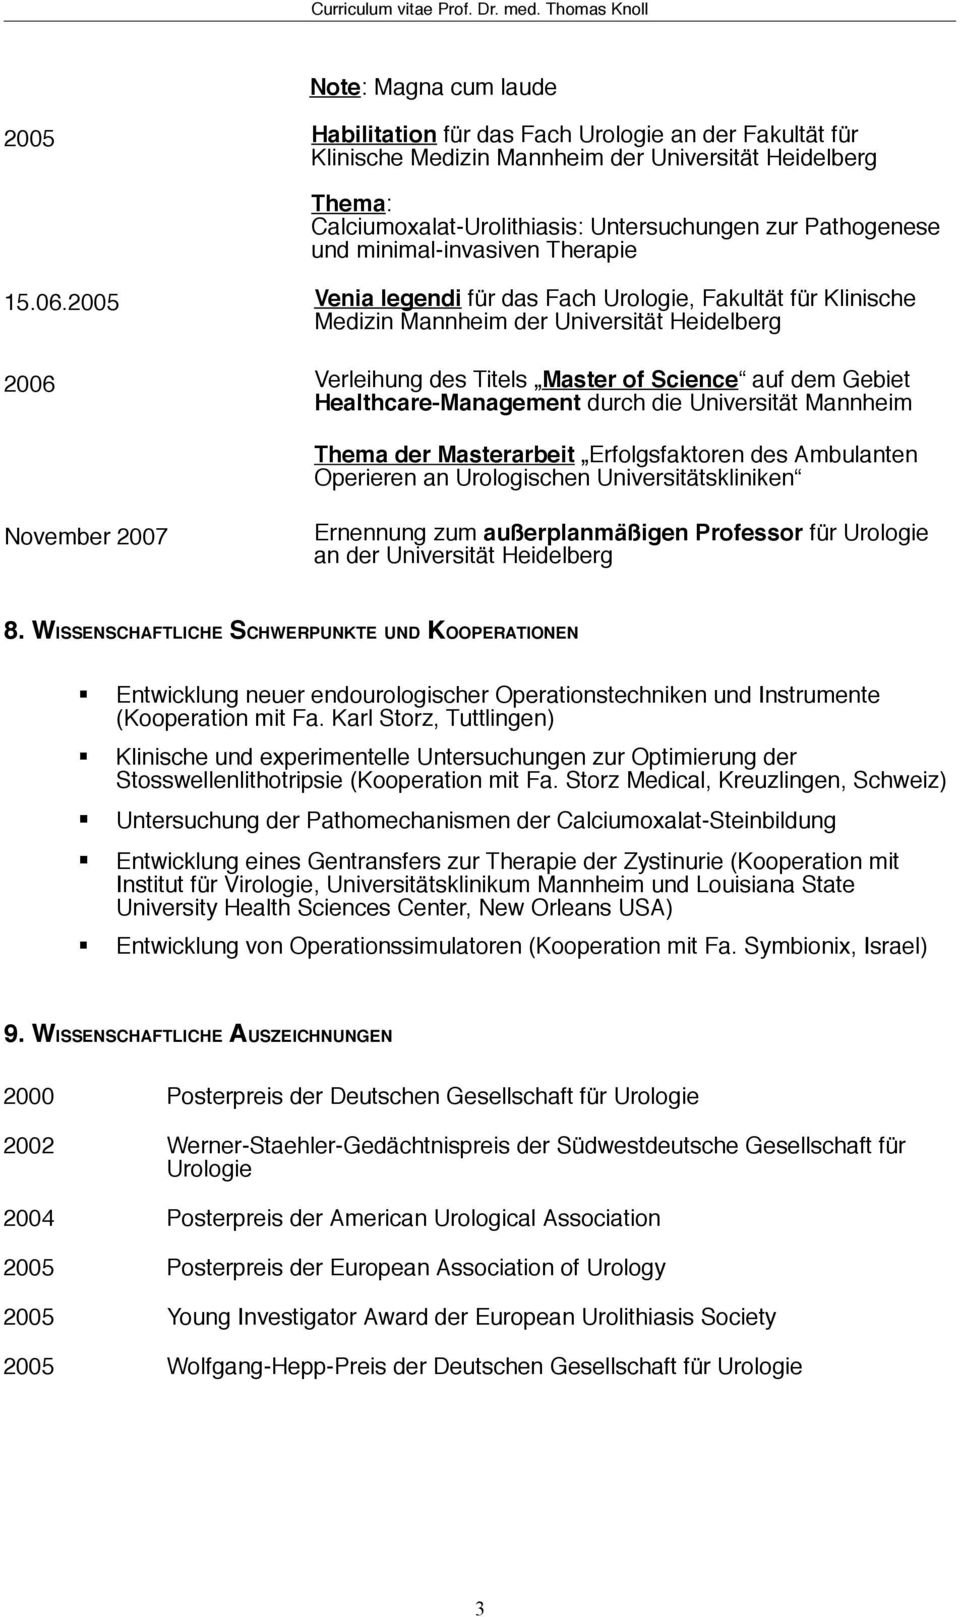 2005 Venia legendi für das Fach Urologie, Fakultät für Klinische Medizin der Universität Heidelberg 2006 Verleihung des Titels Master of Science auf dem Gebiet Healthcare-Management durch die